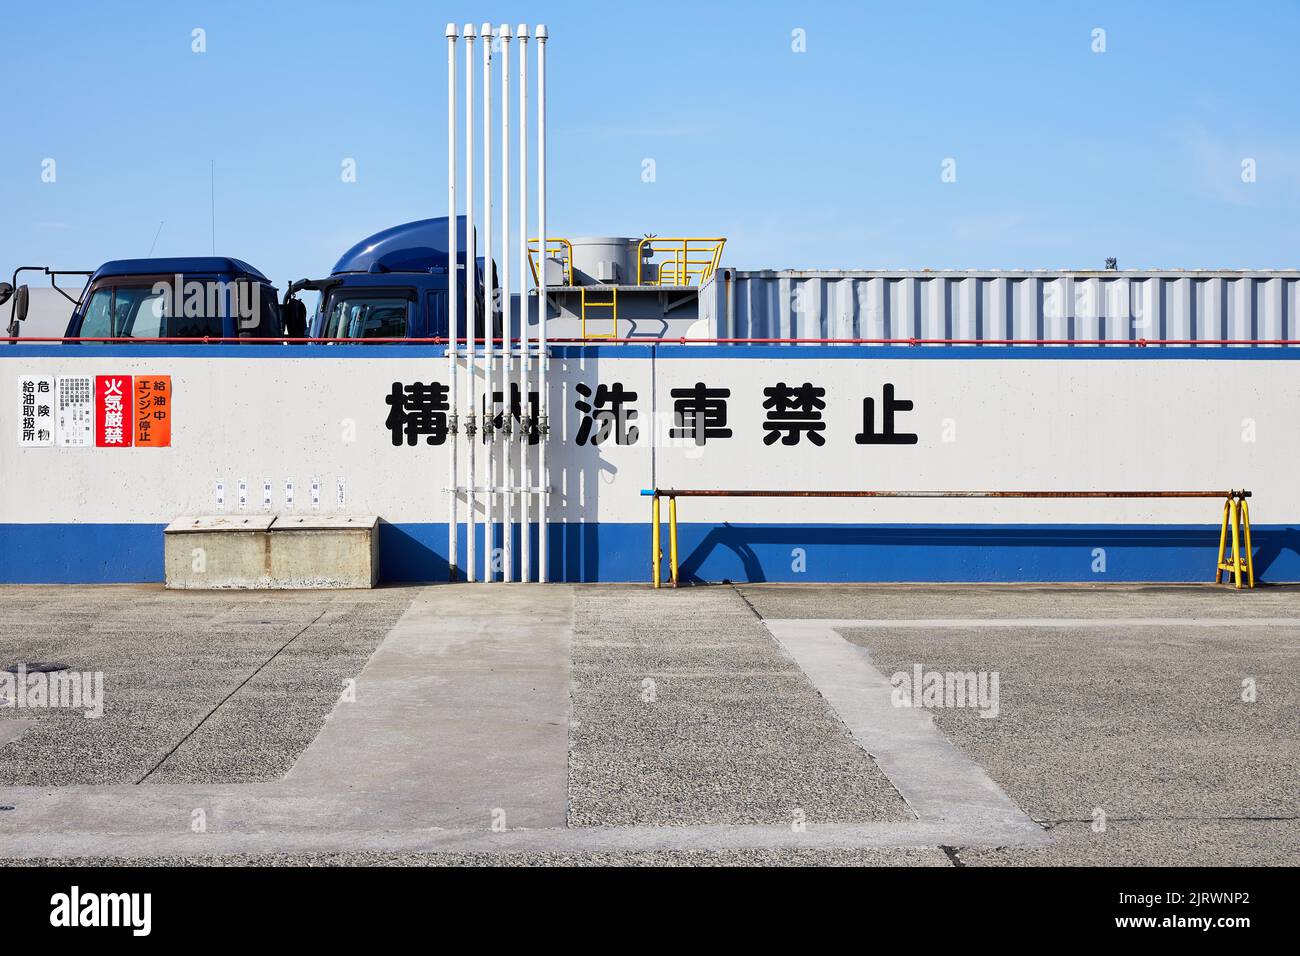 Trucks behind wall with Japanese text; Kawasaki, Kanagawa Prefecture, Japan Stock Photo